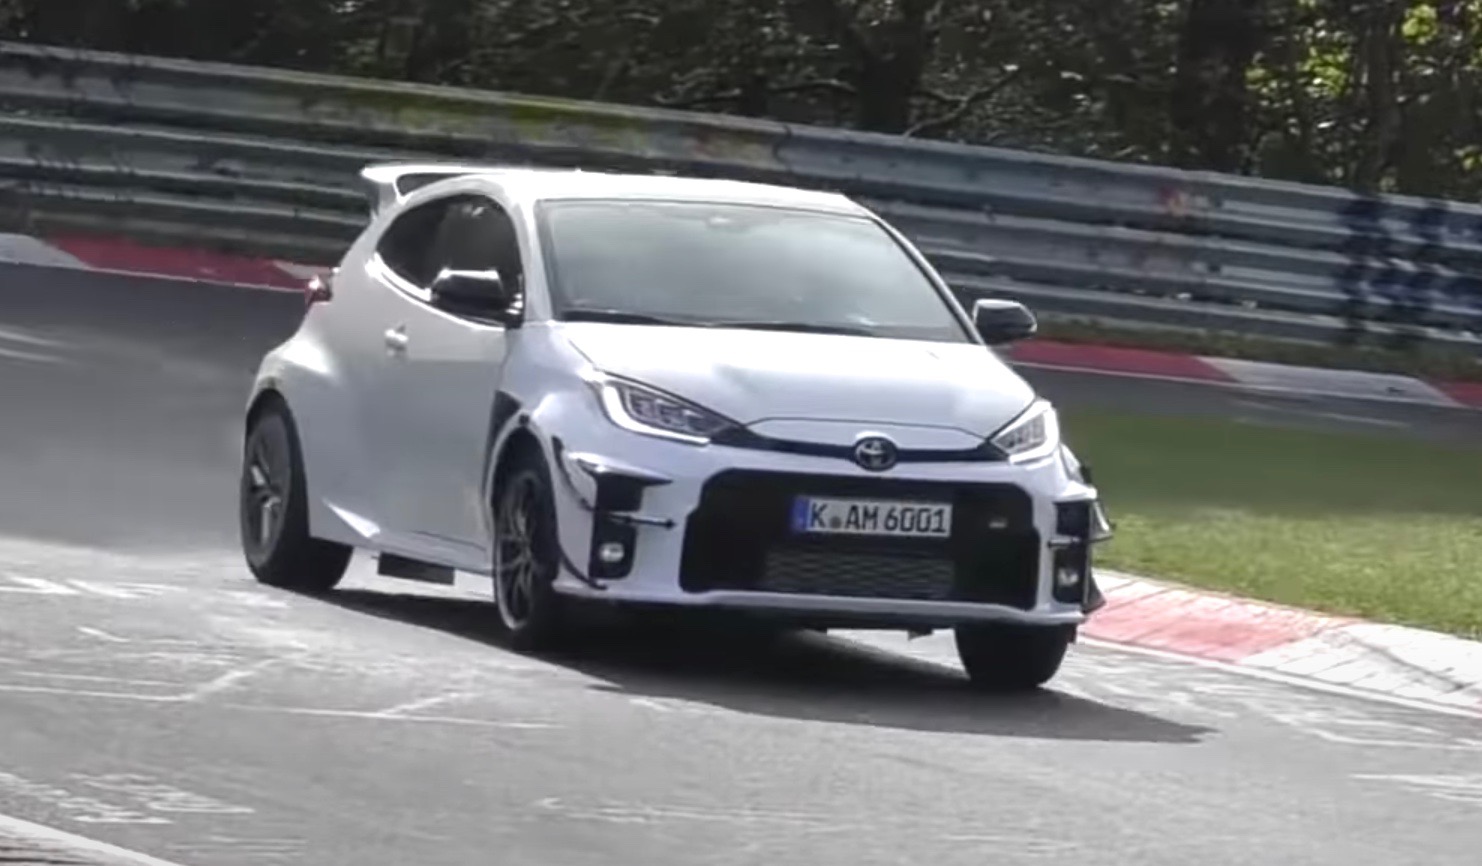 Toyota testing hardcore ‘Yaris GRMN’ on Nurburgring? (video)